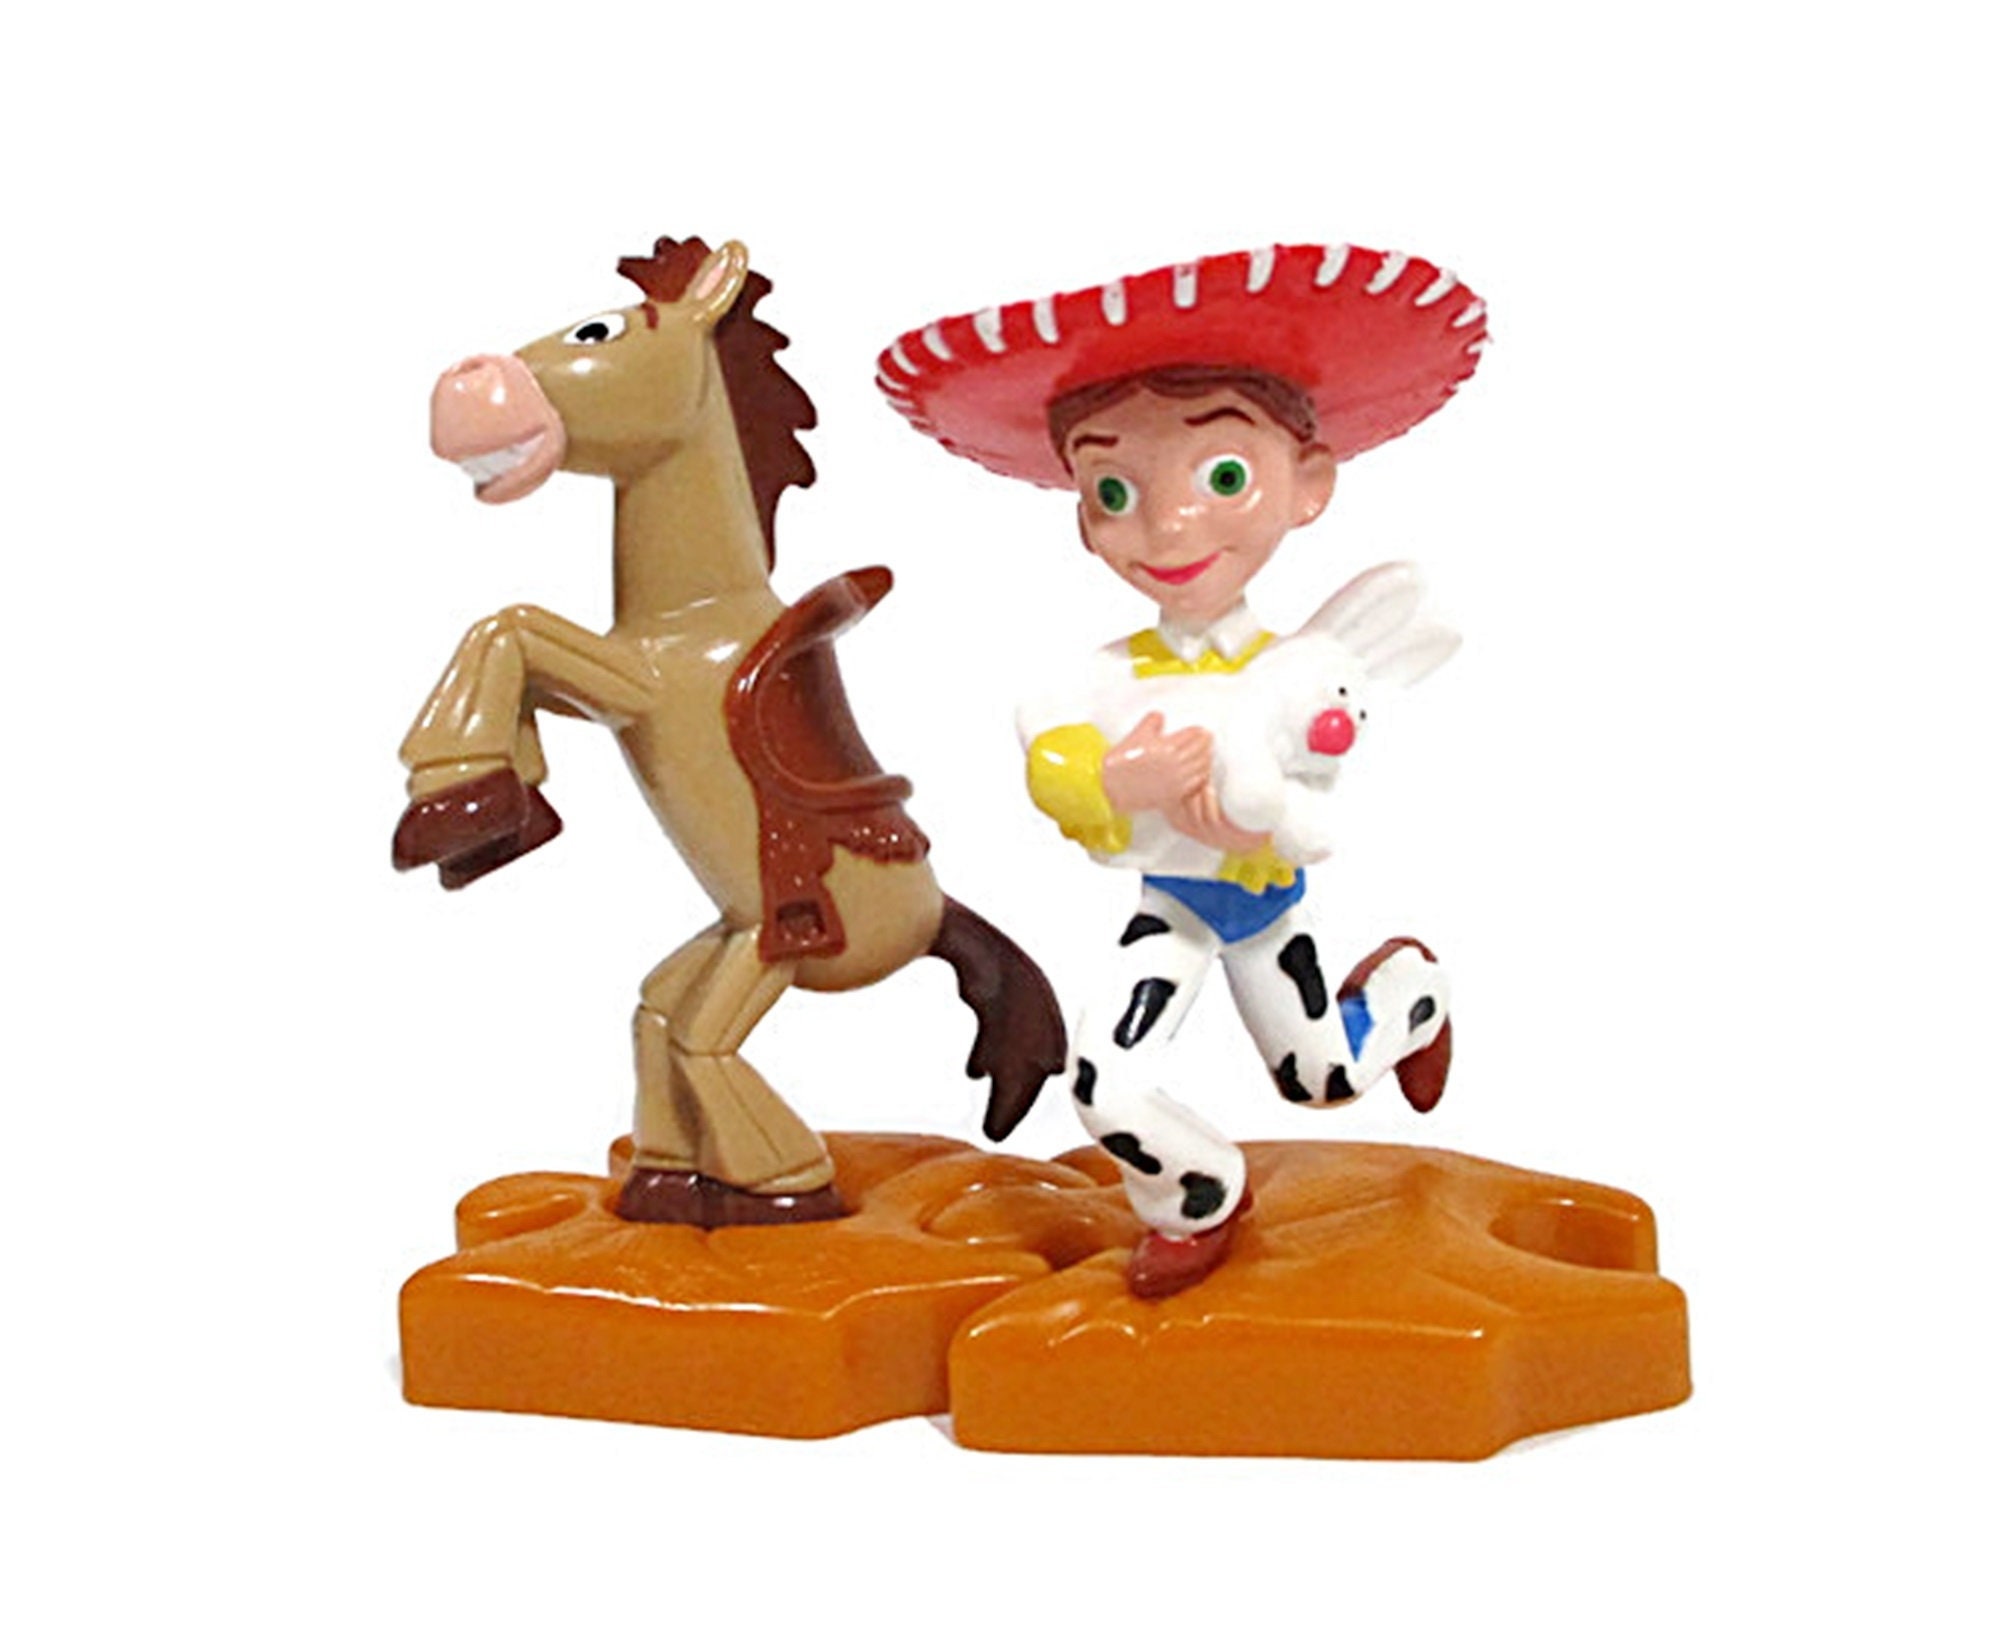 geboren Voorafgaan assistent Vintage Toy Story 2 Figurines JESSIE & BULLSEYE Disney Pixar - Etsy België